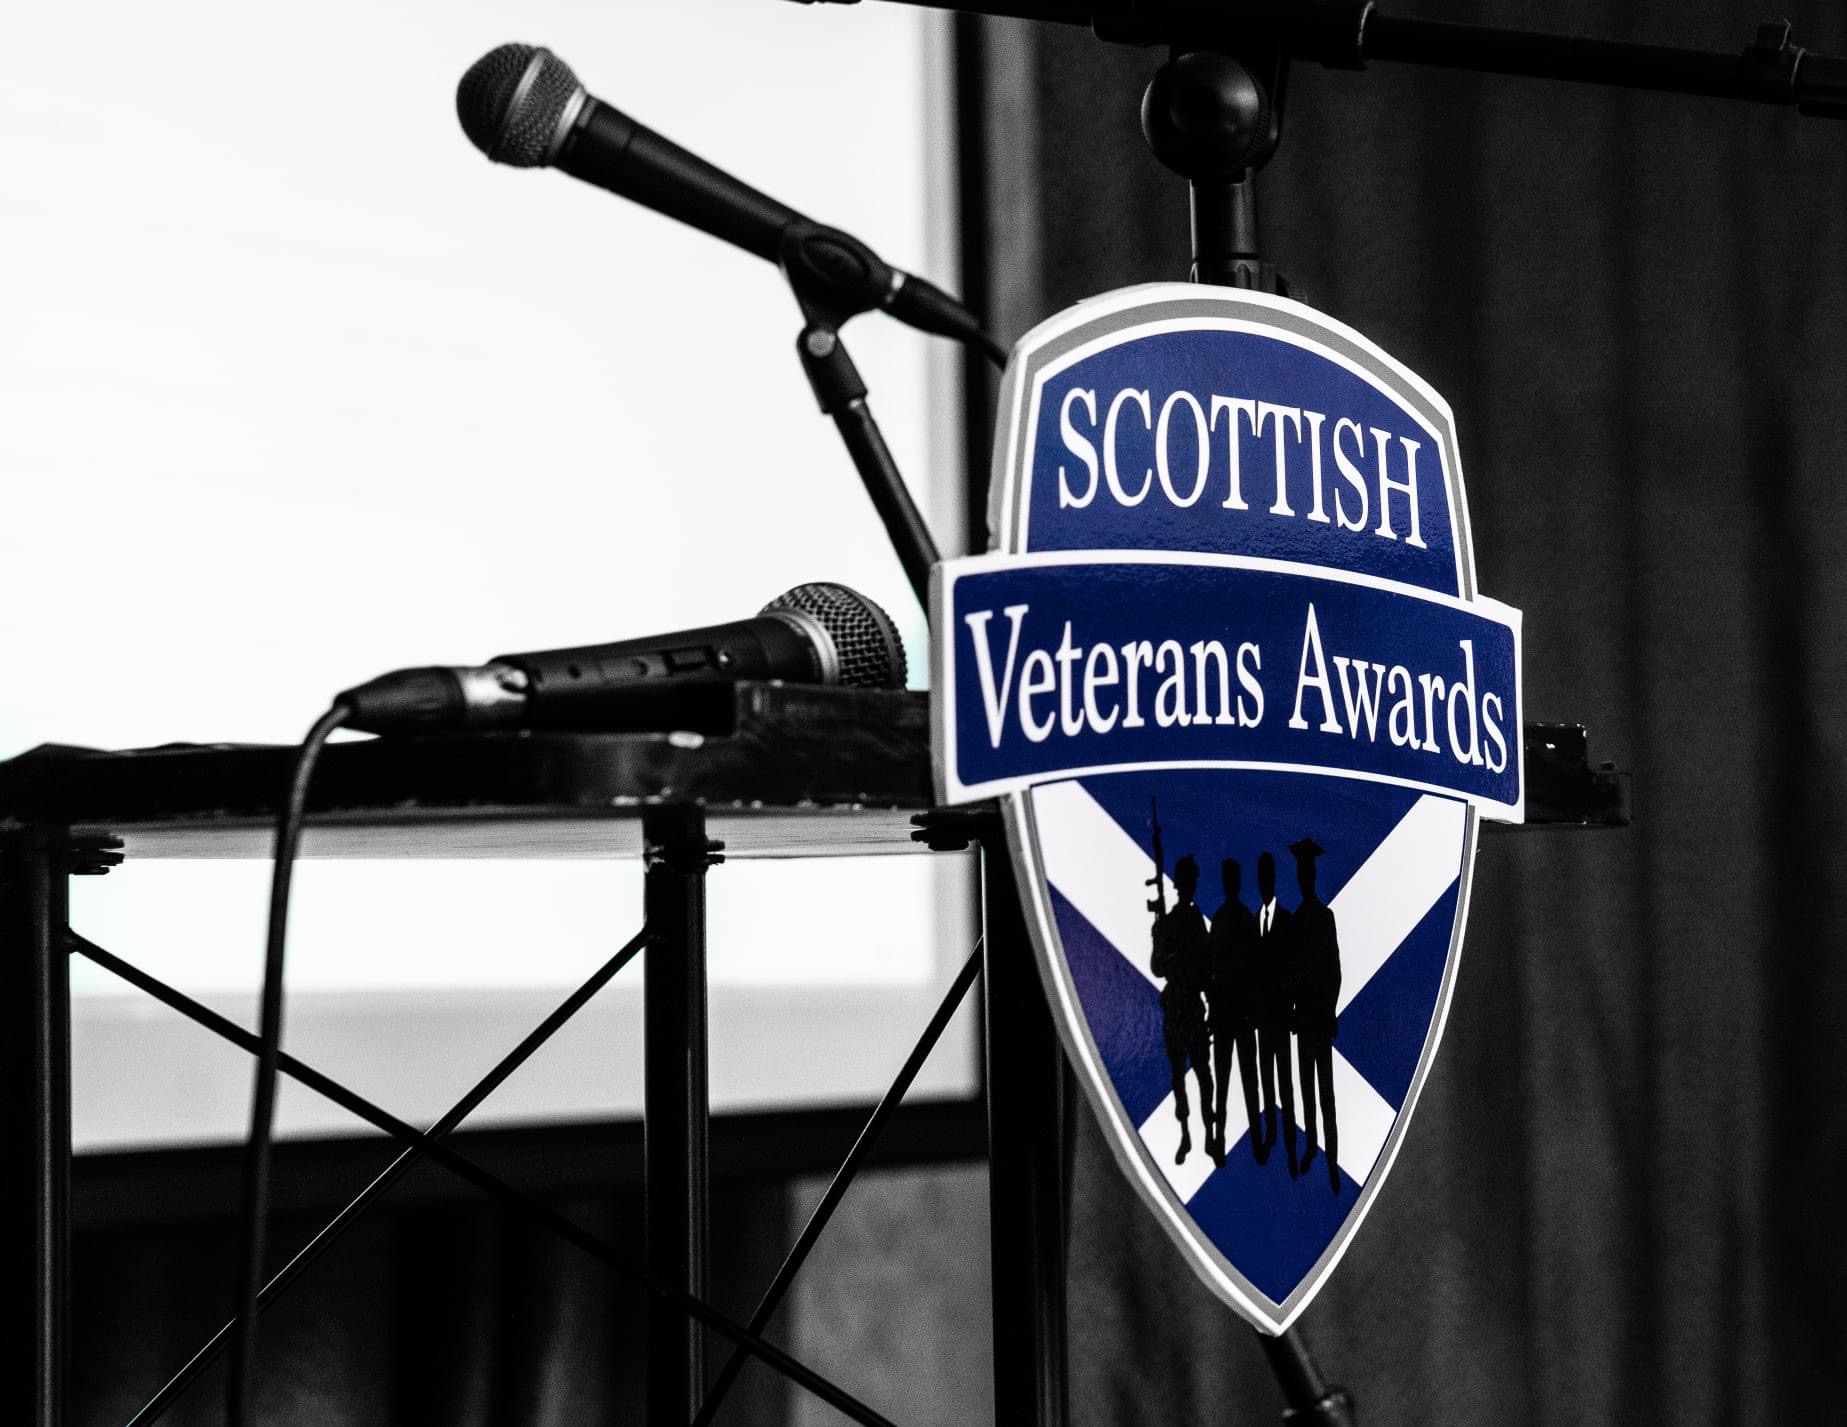 Scottish Veterans Awards 2022 – Winners Revealed